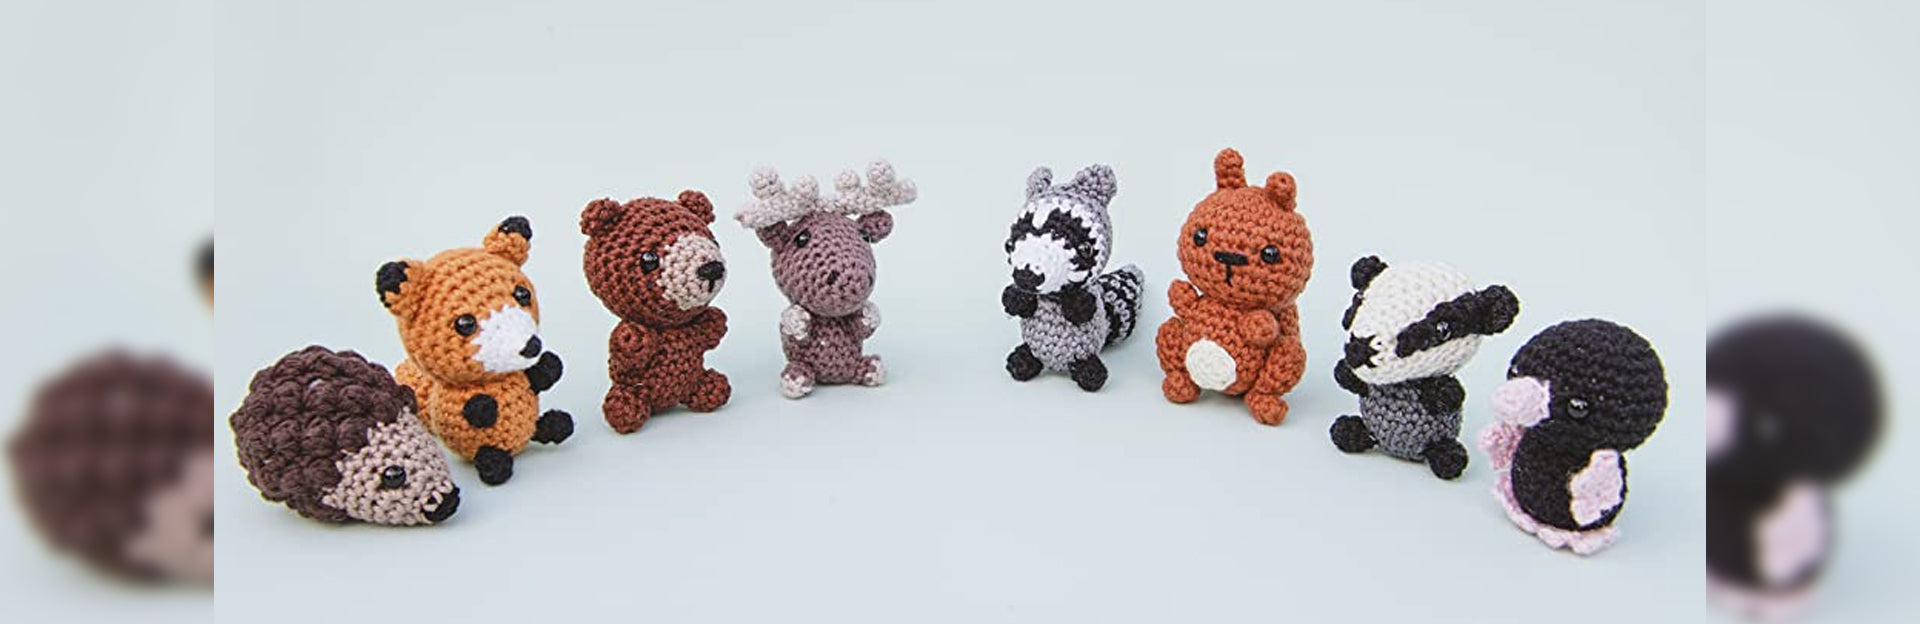 https://www.toynk.com/cdn/shop/articles/Easy-Crochet-Animals-For-Beginners_1920x.jpg?v=1655789519